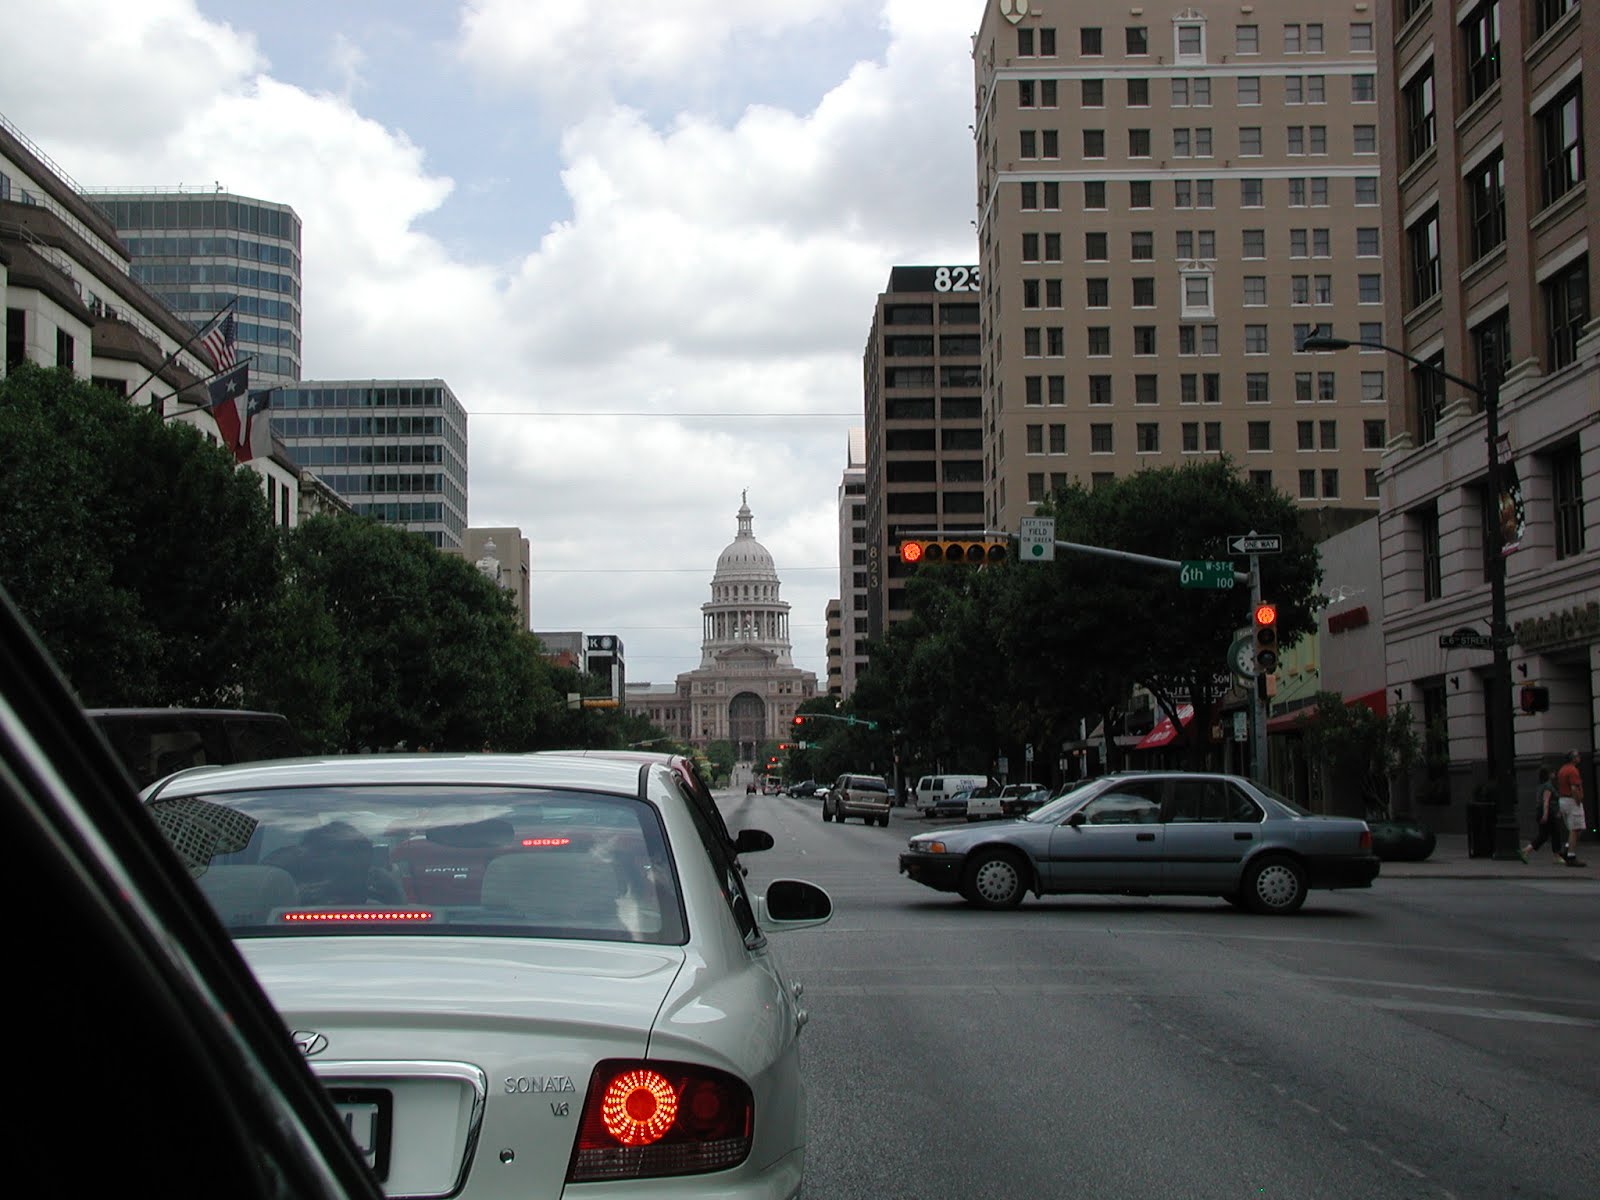 Downtown Austin